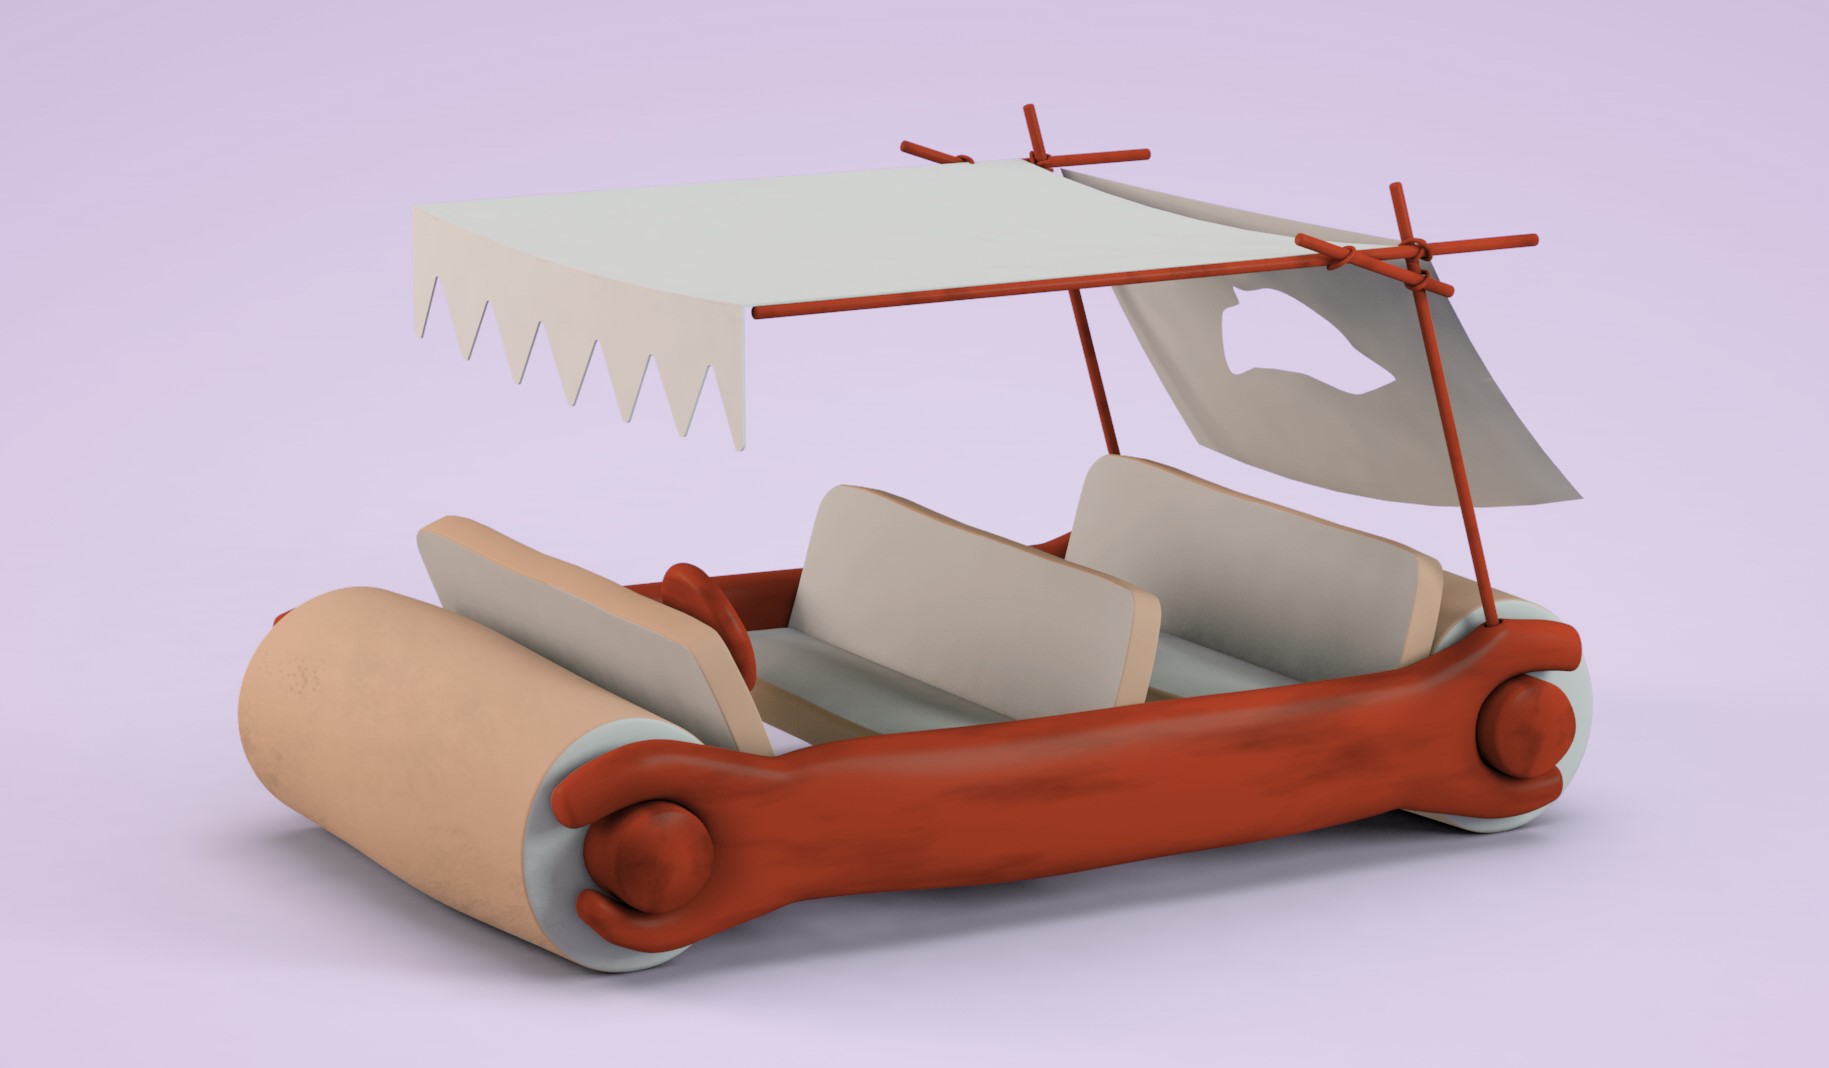 Flintstone car using wooden bearing